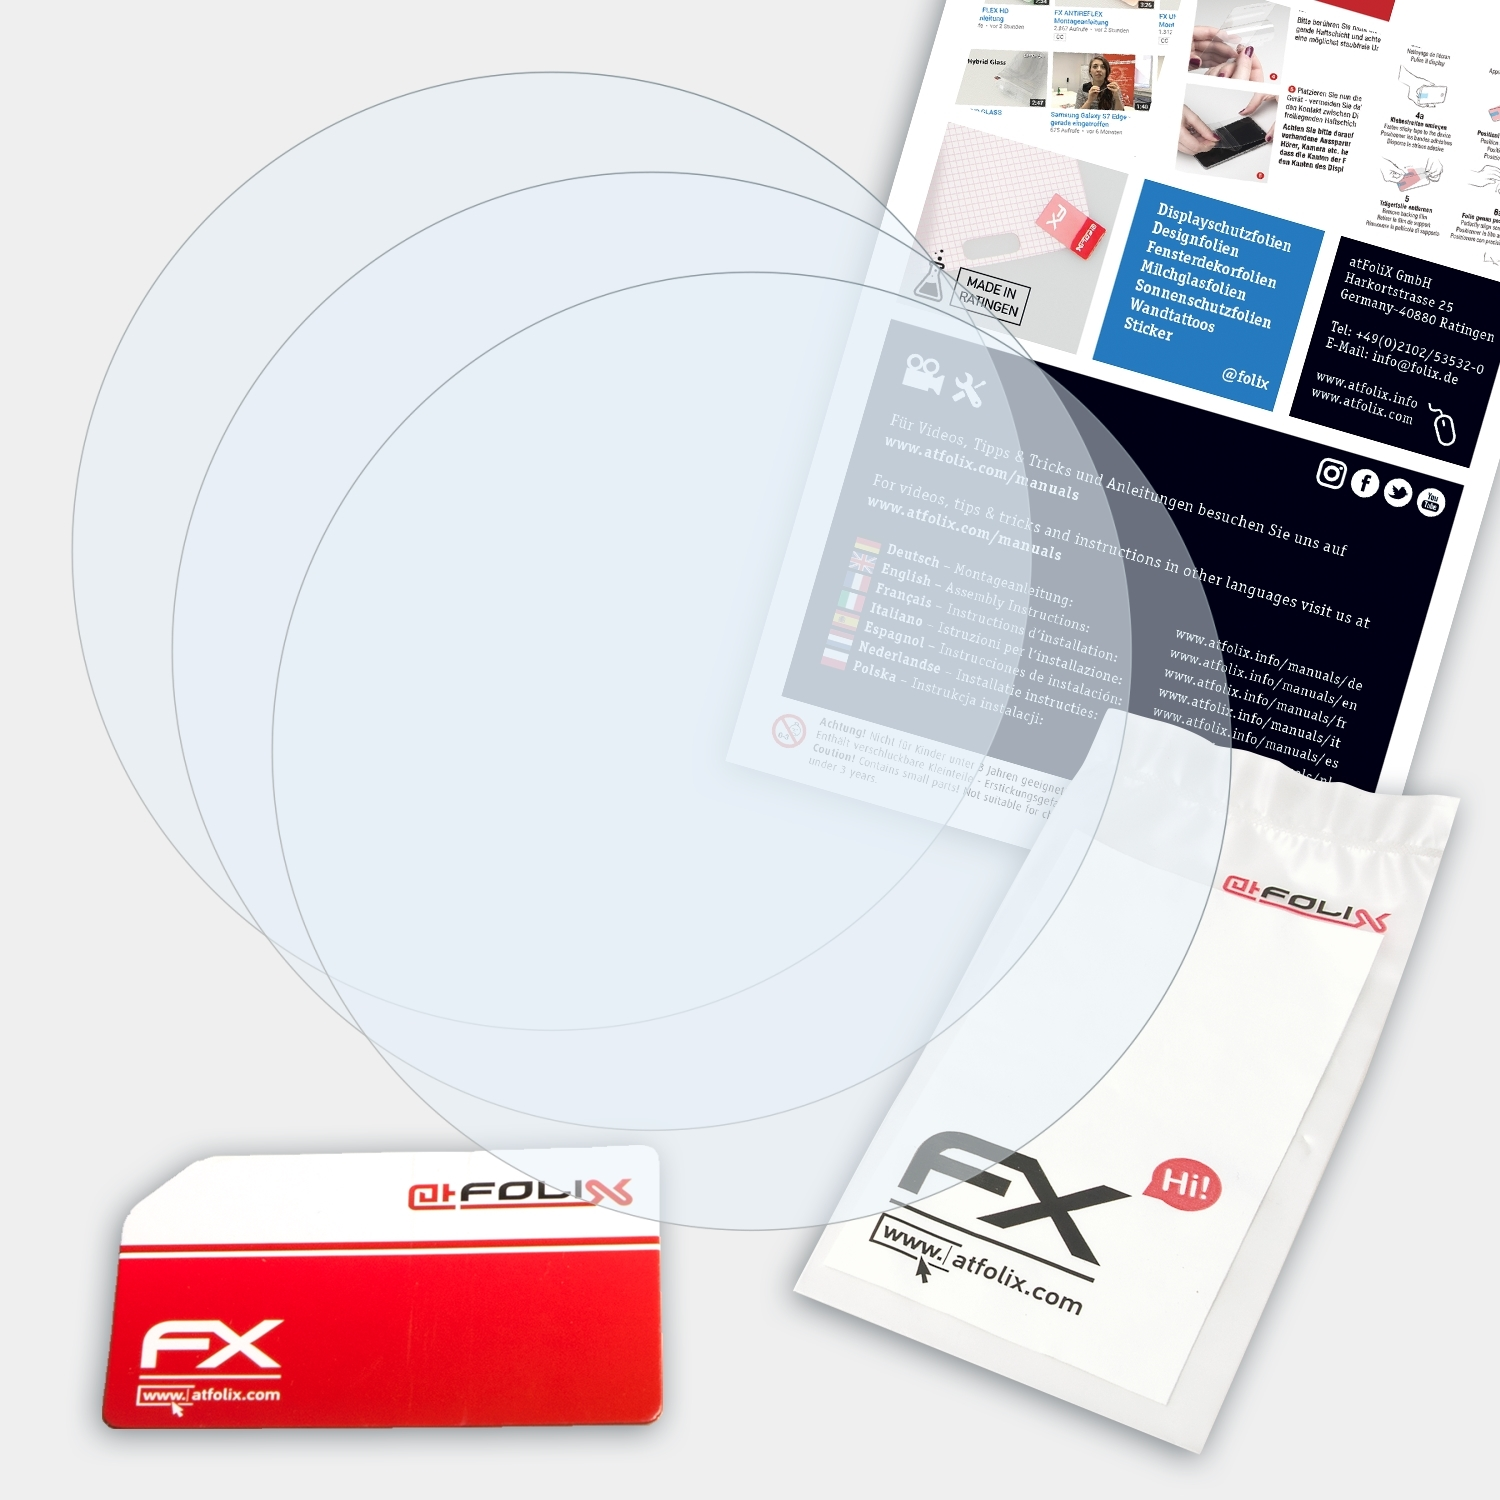 Garmin ATFOLIX Fenix Displayschutz(für Chronos) FX-Clear 3x